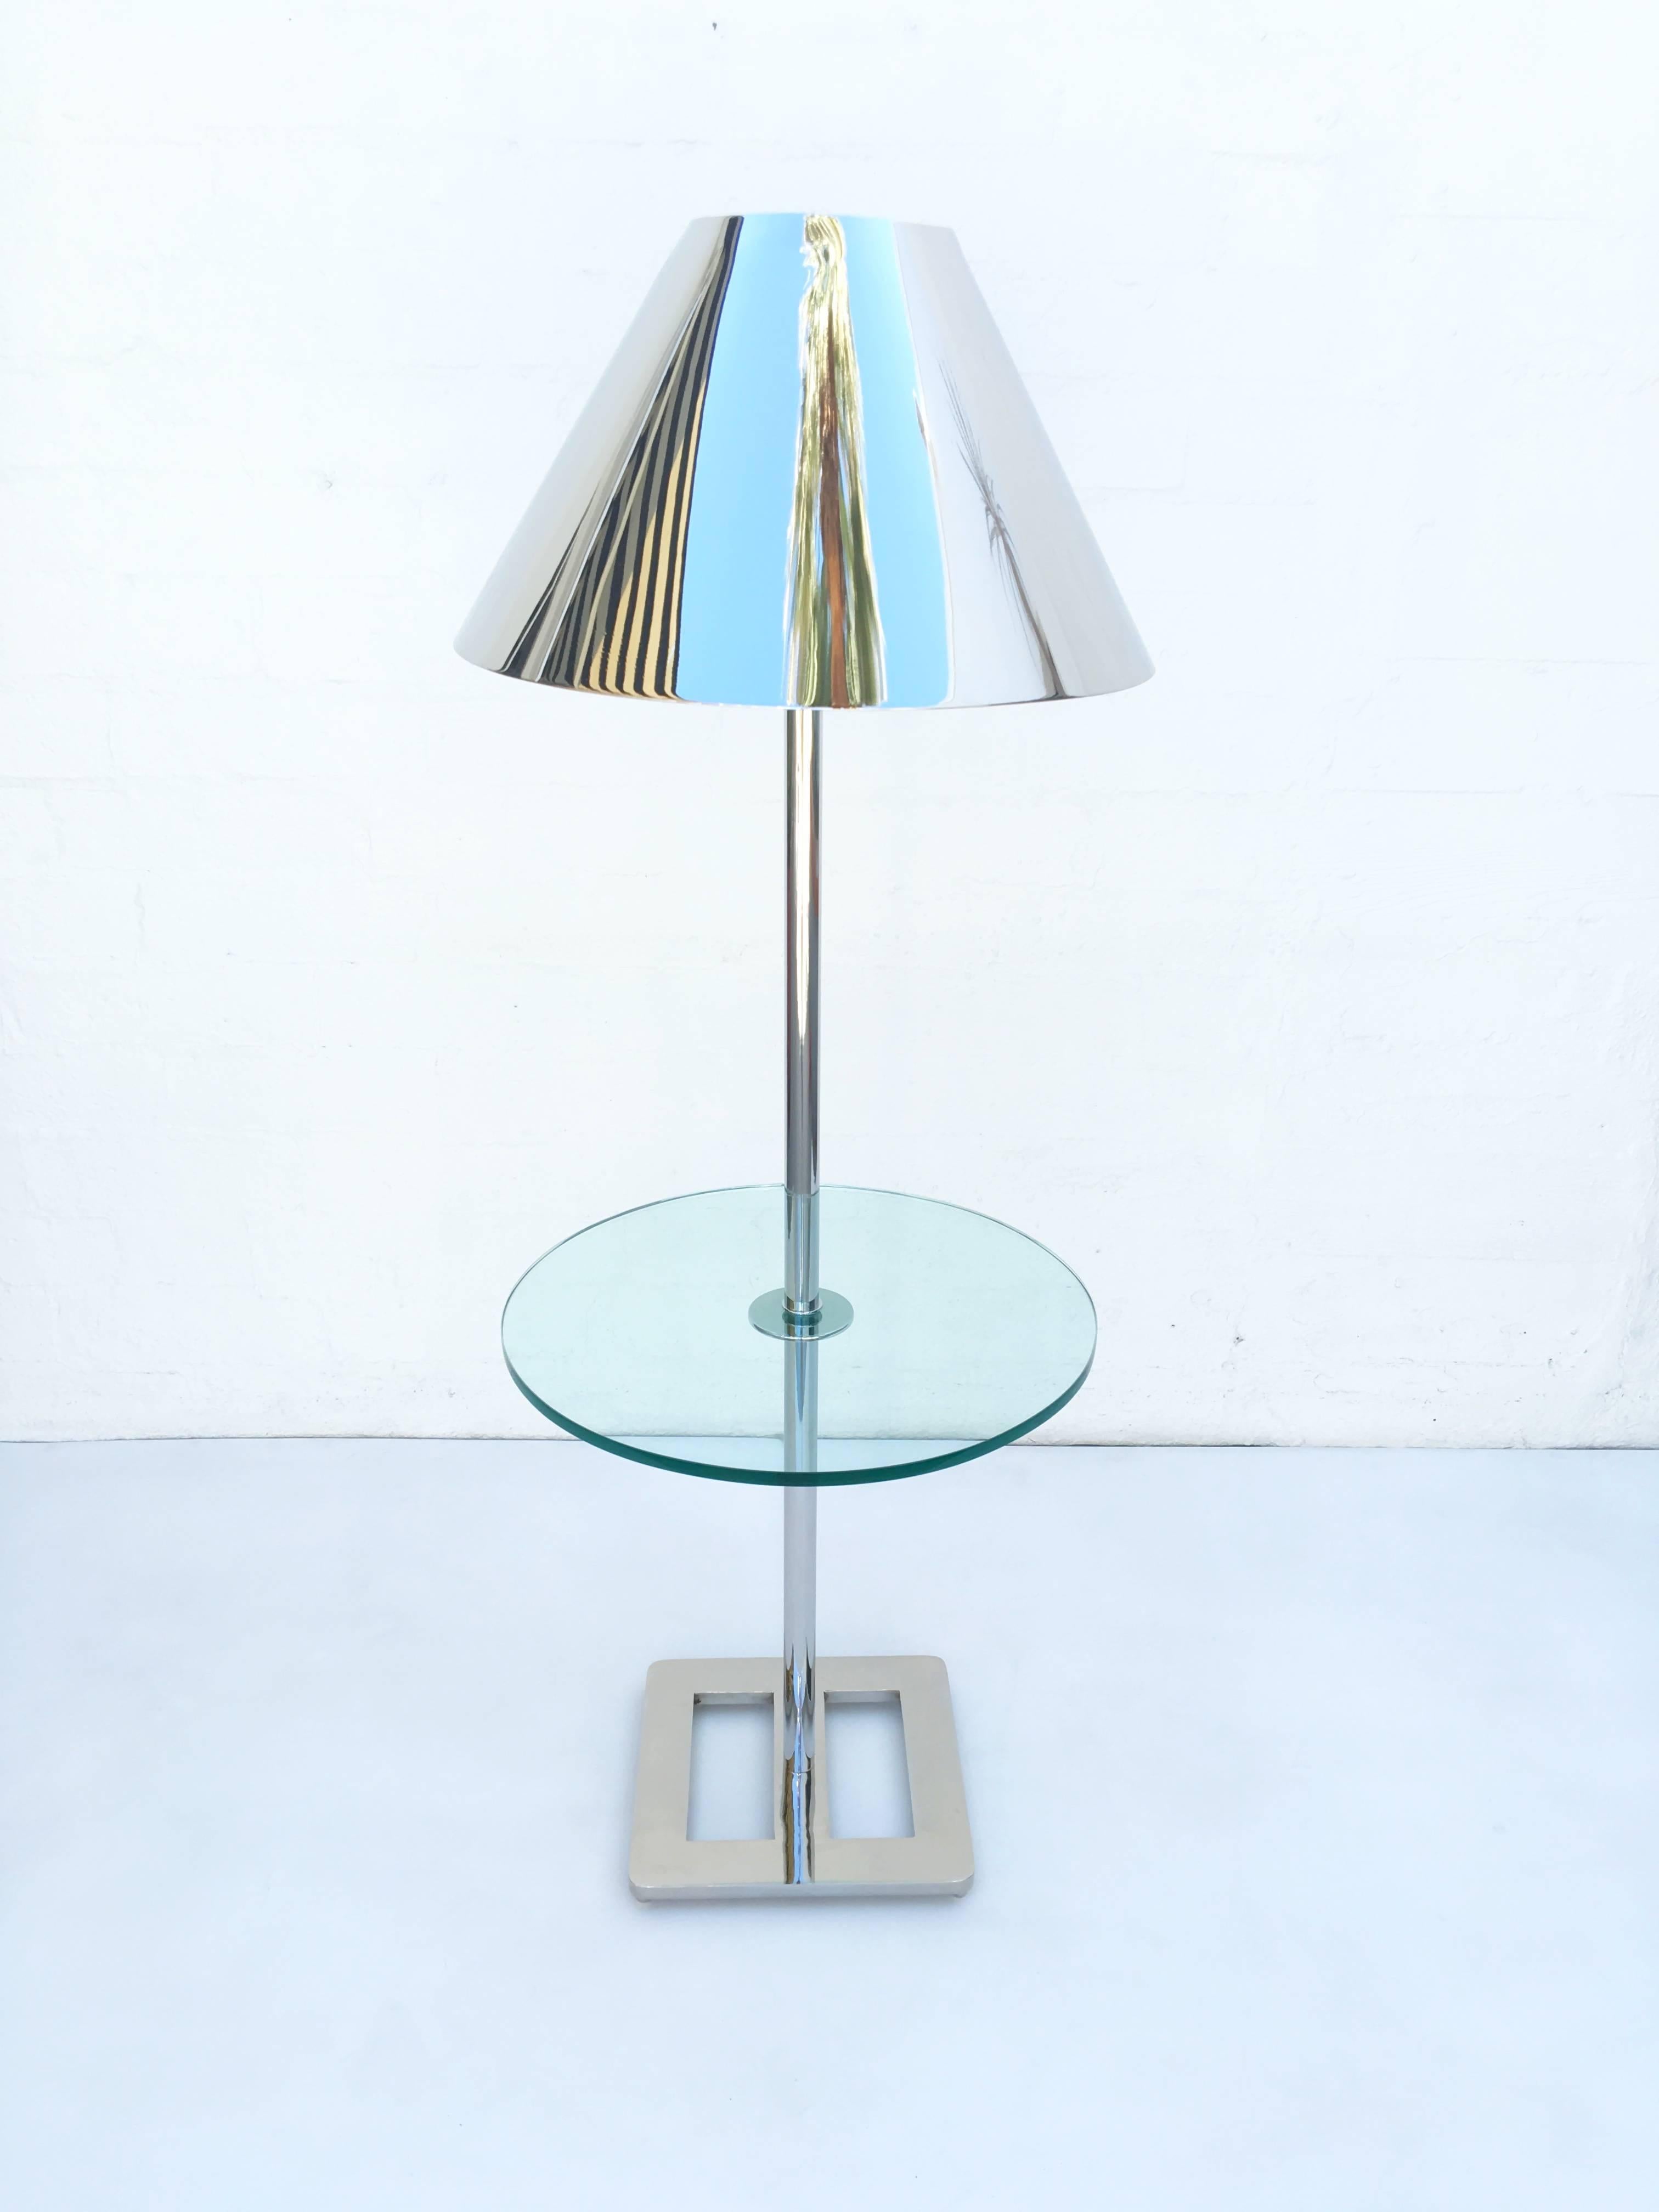 Eine Stehlampe aus poliertem Nickel mit eingebauter Tischkombination, entworfen von Charles Hollis Jones im Jahr 1970.
Tabelle ist 20